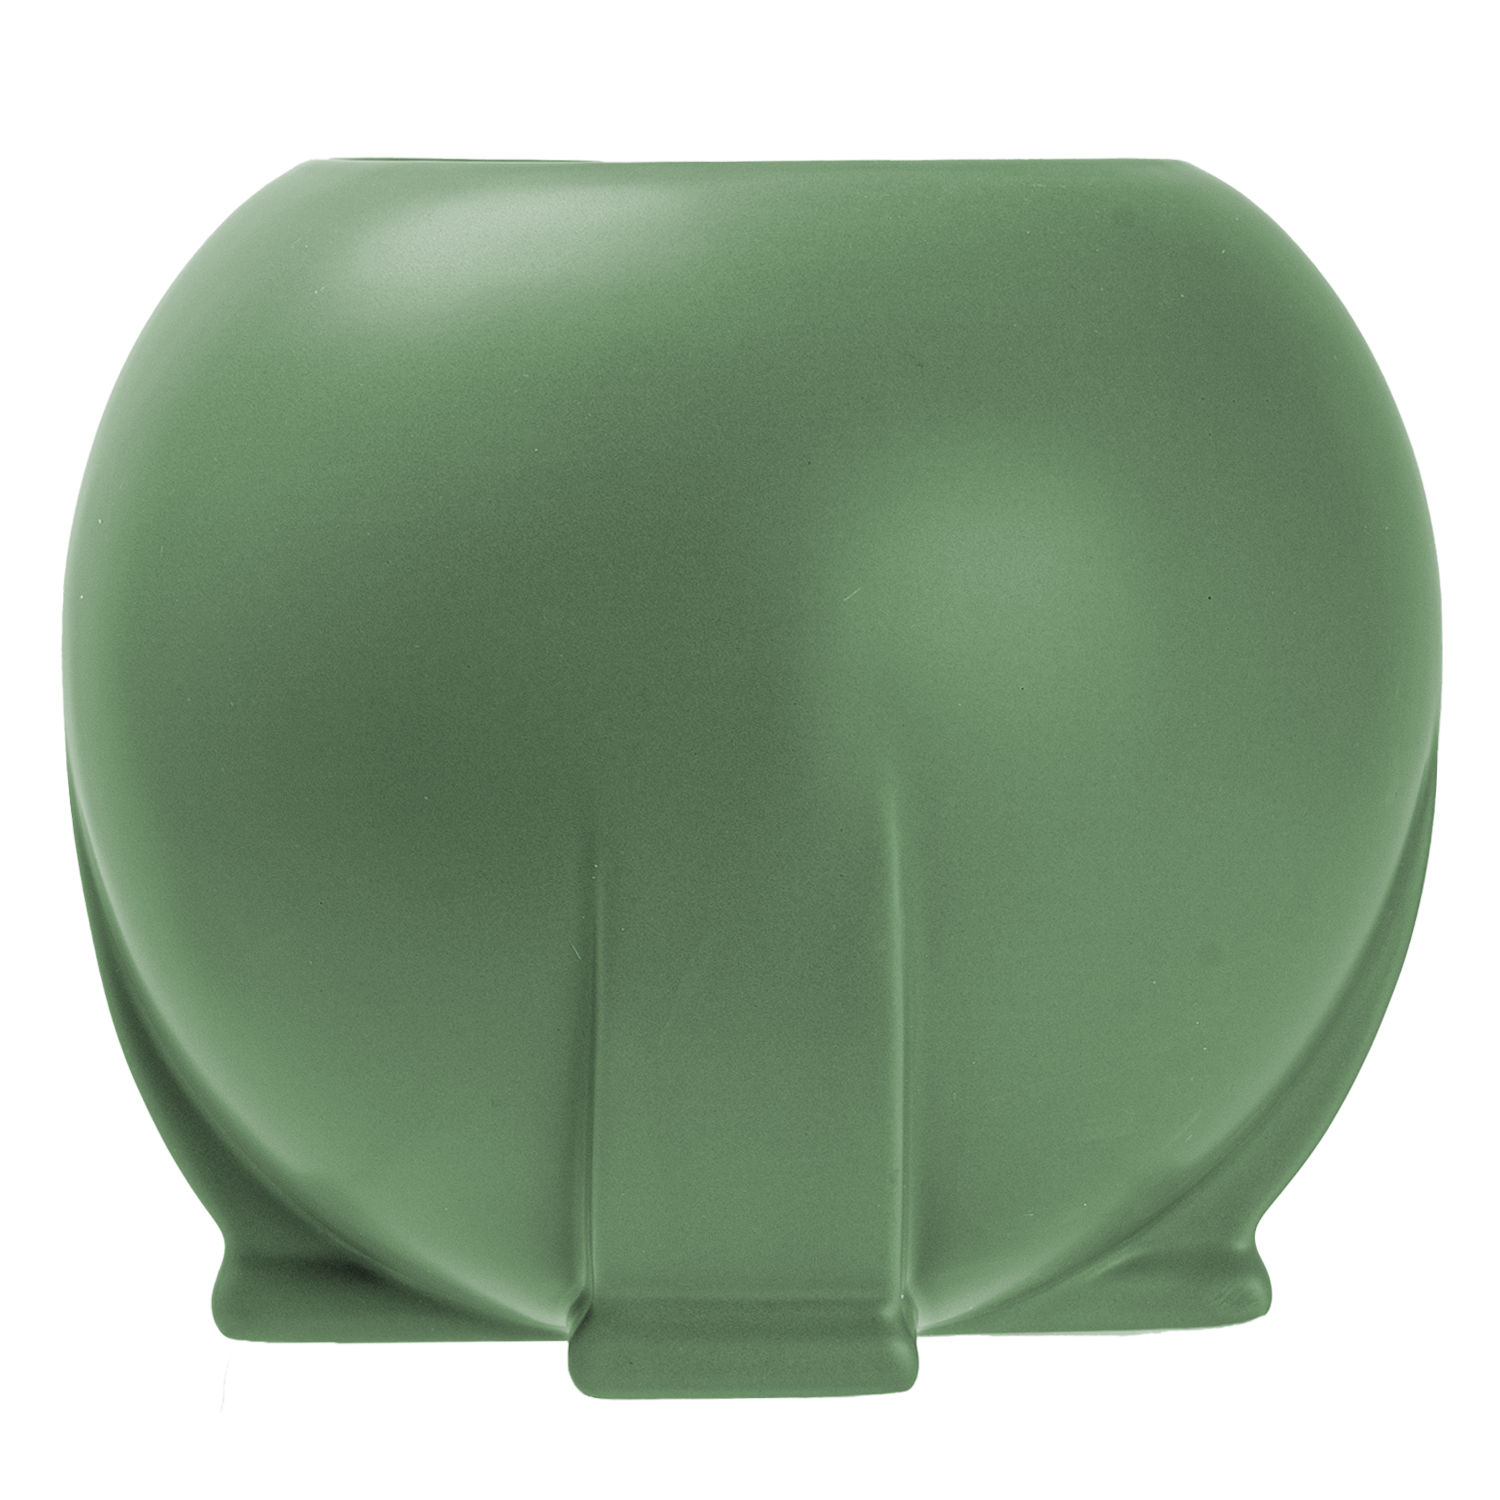 NEW! Y3551 TECO Orb Vase - Green